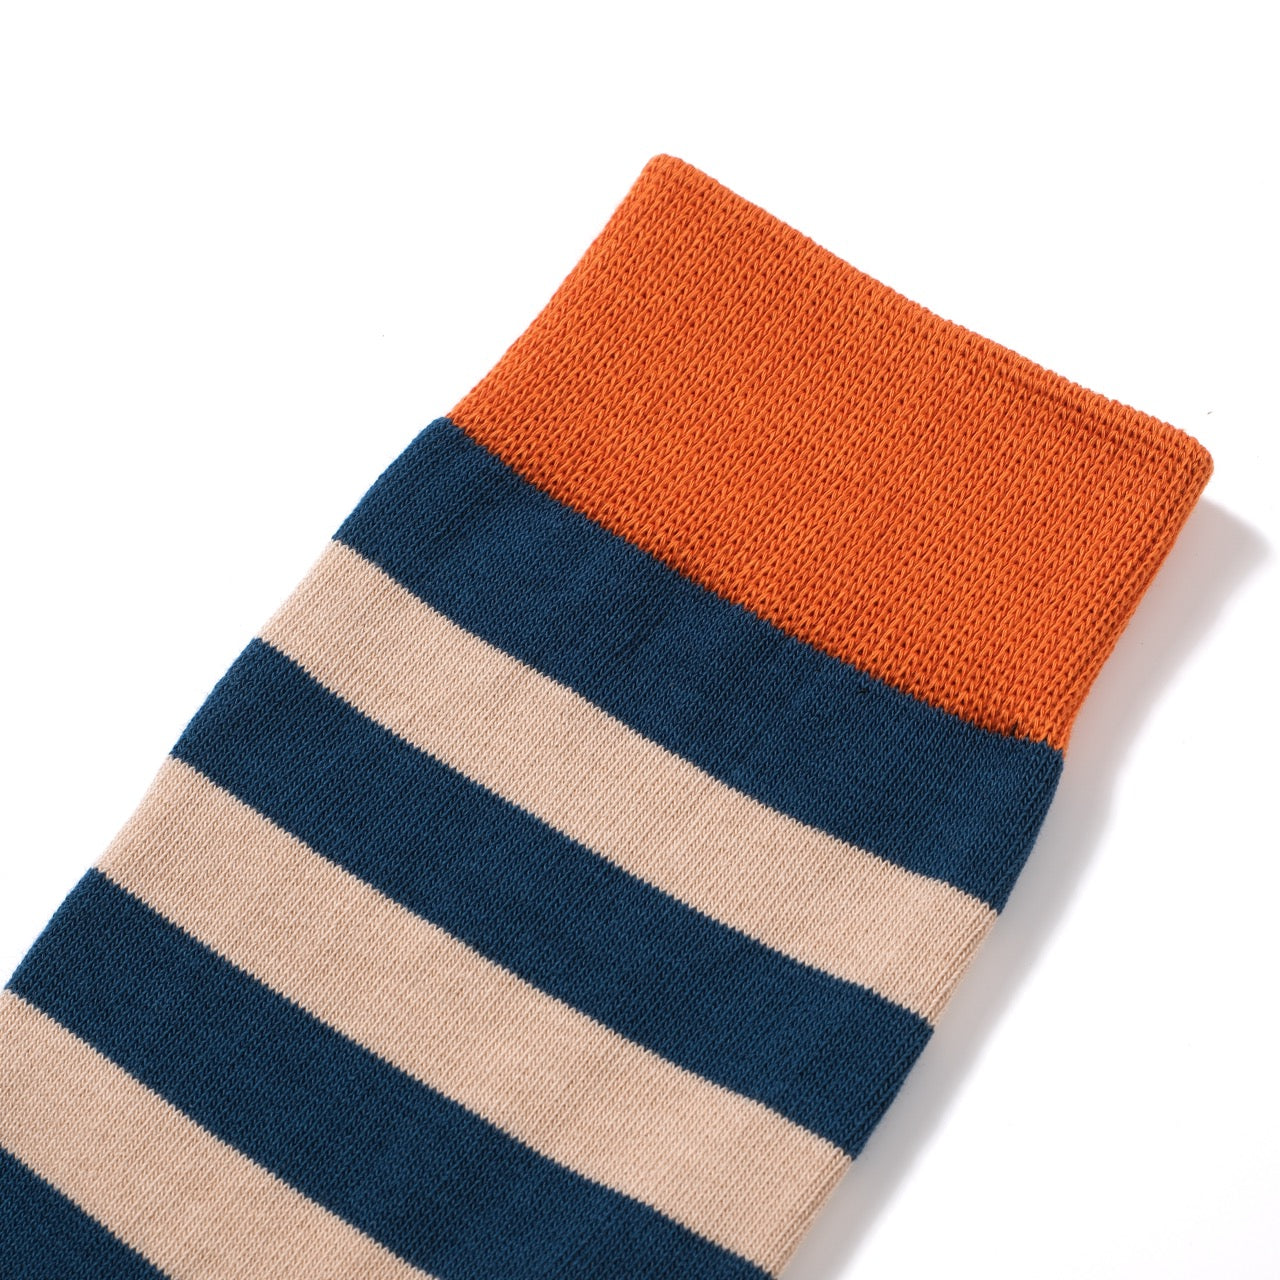 Striped Mid-Calf Length Socks Men's Cotton Socks